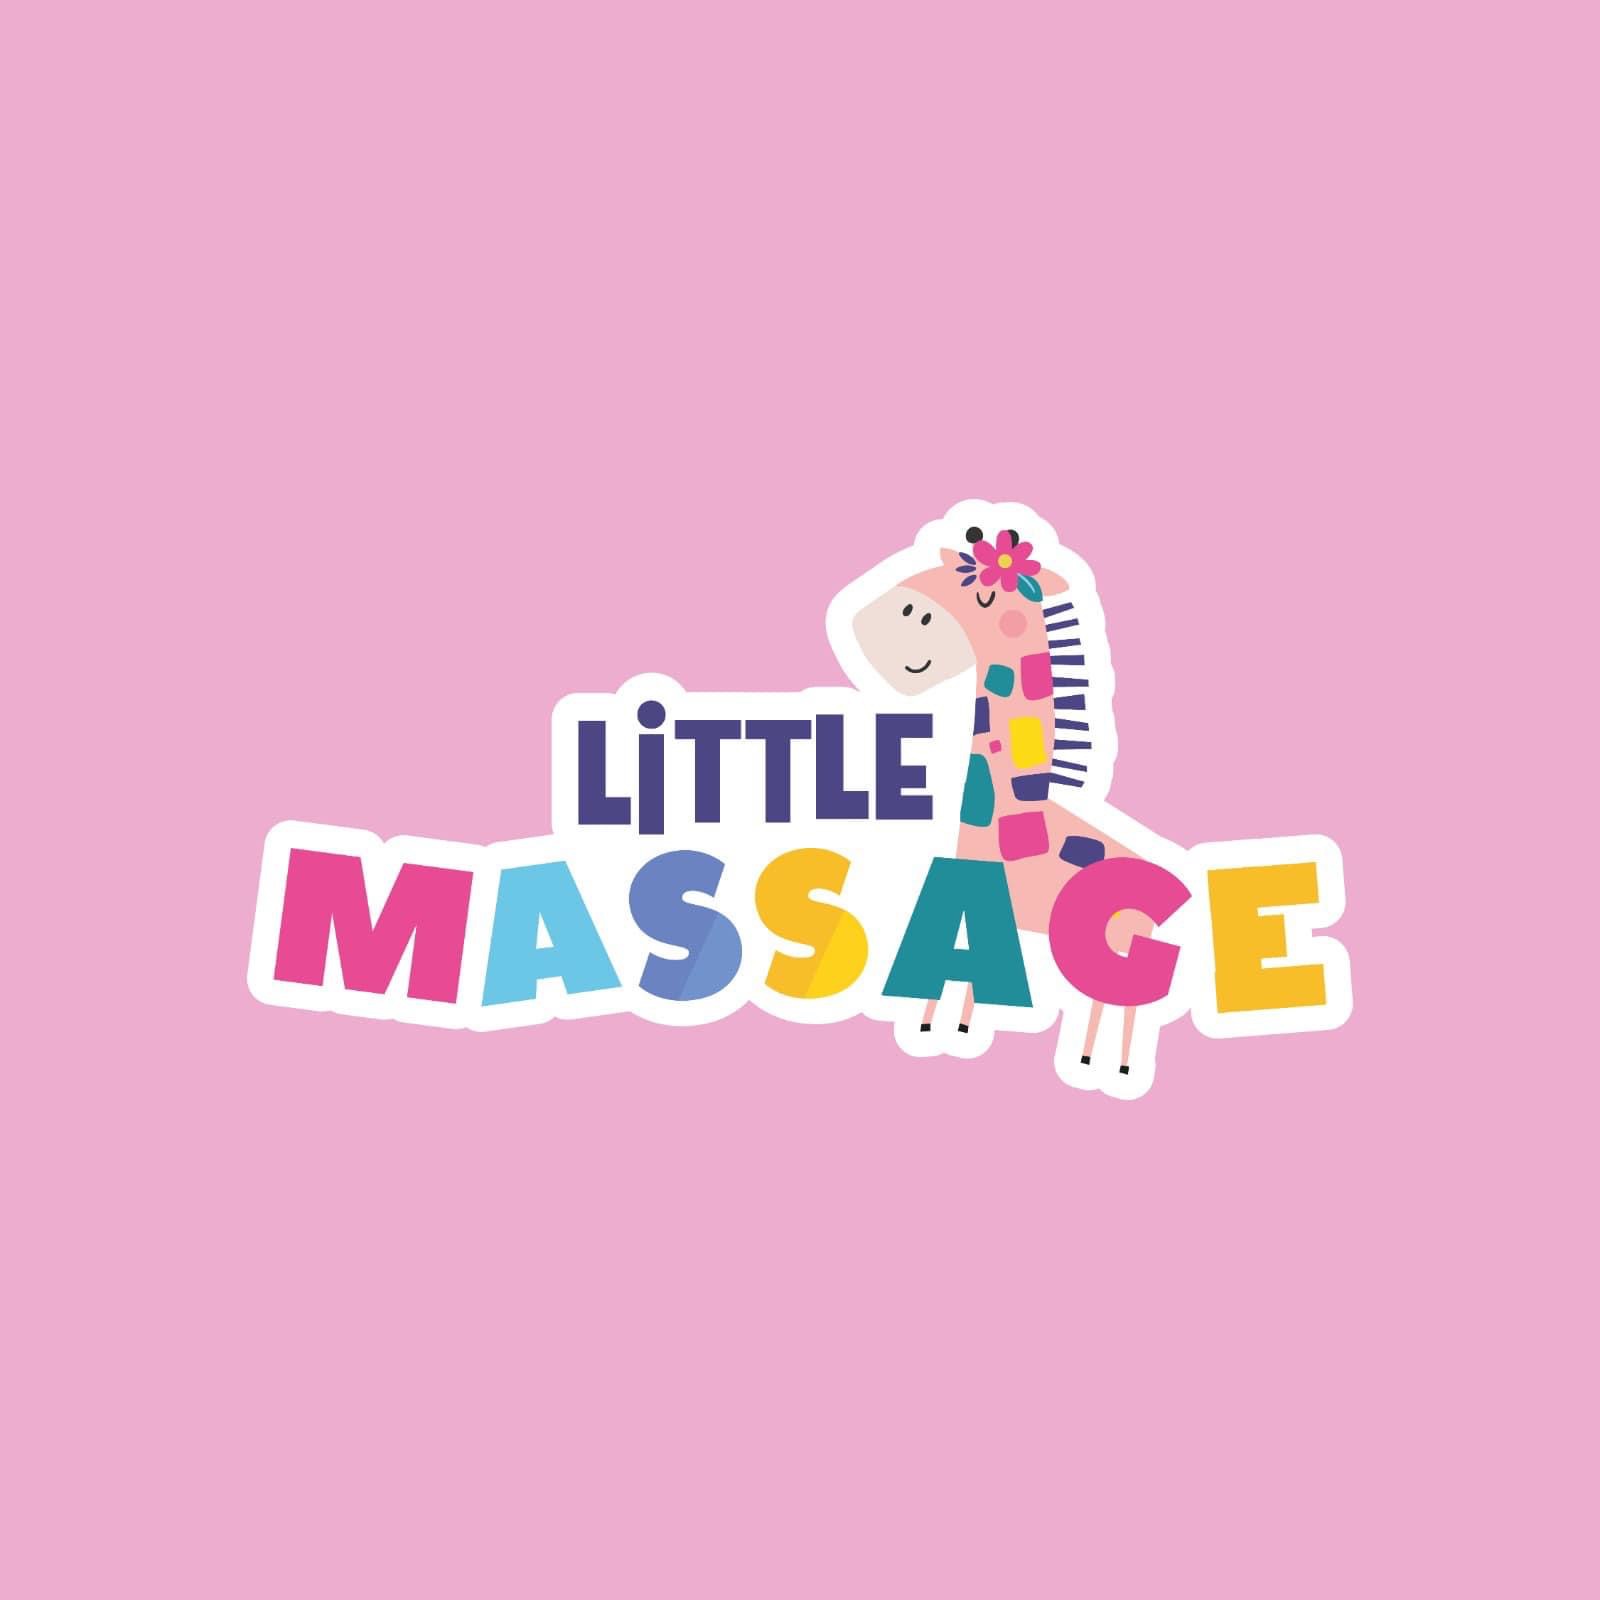 Little Massage Mid Warwickshire's logo